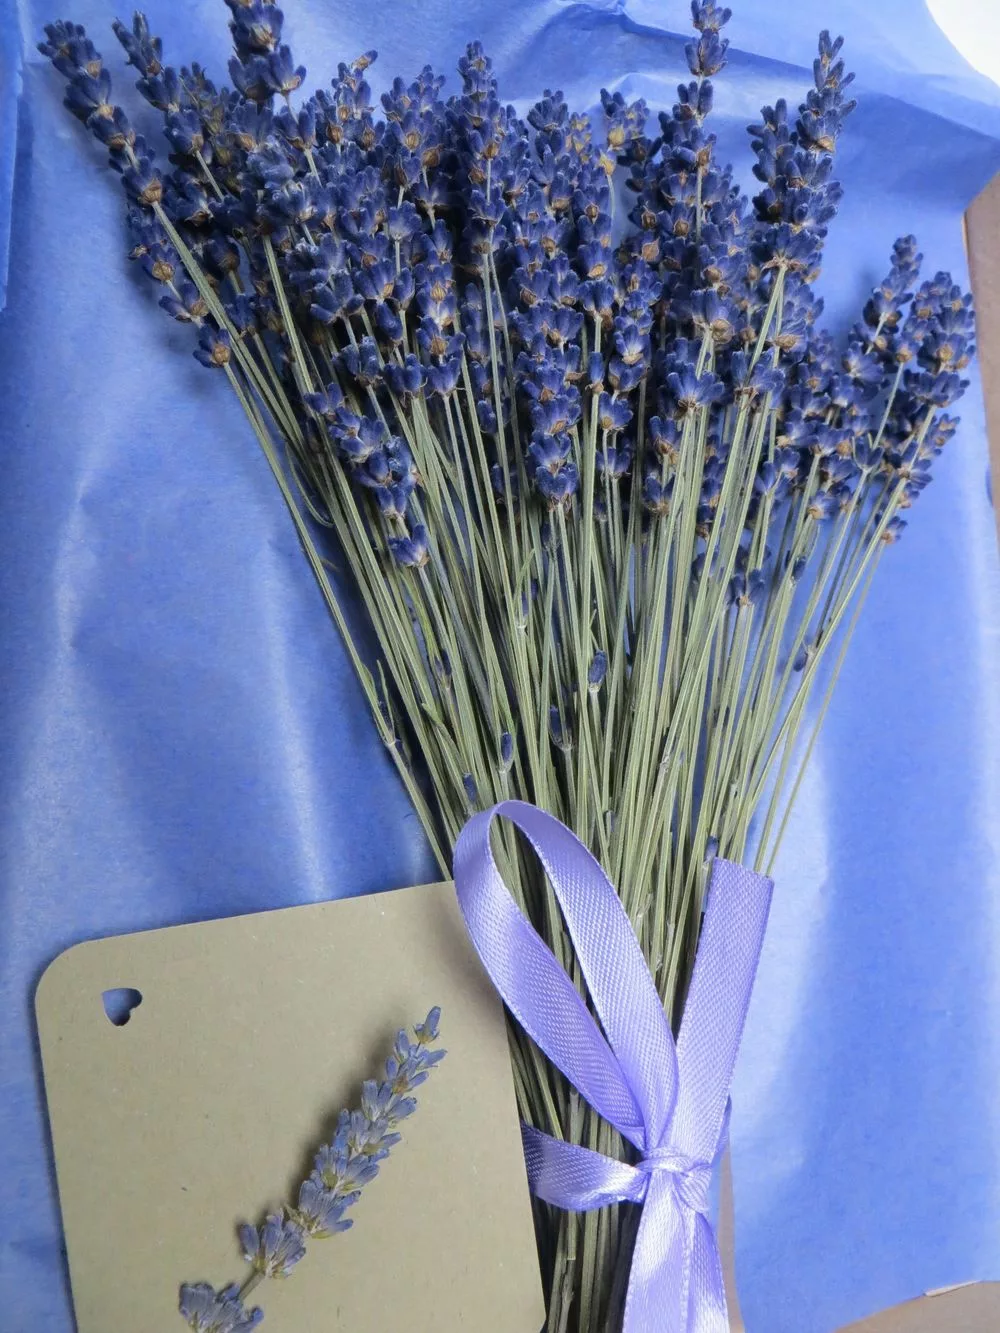 Dried Bouquet Lavender - 100 Stems